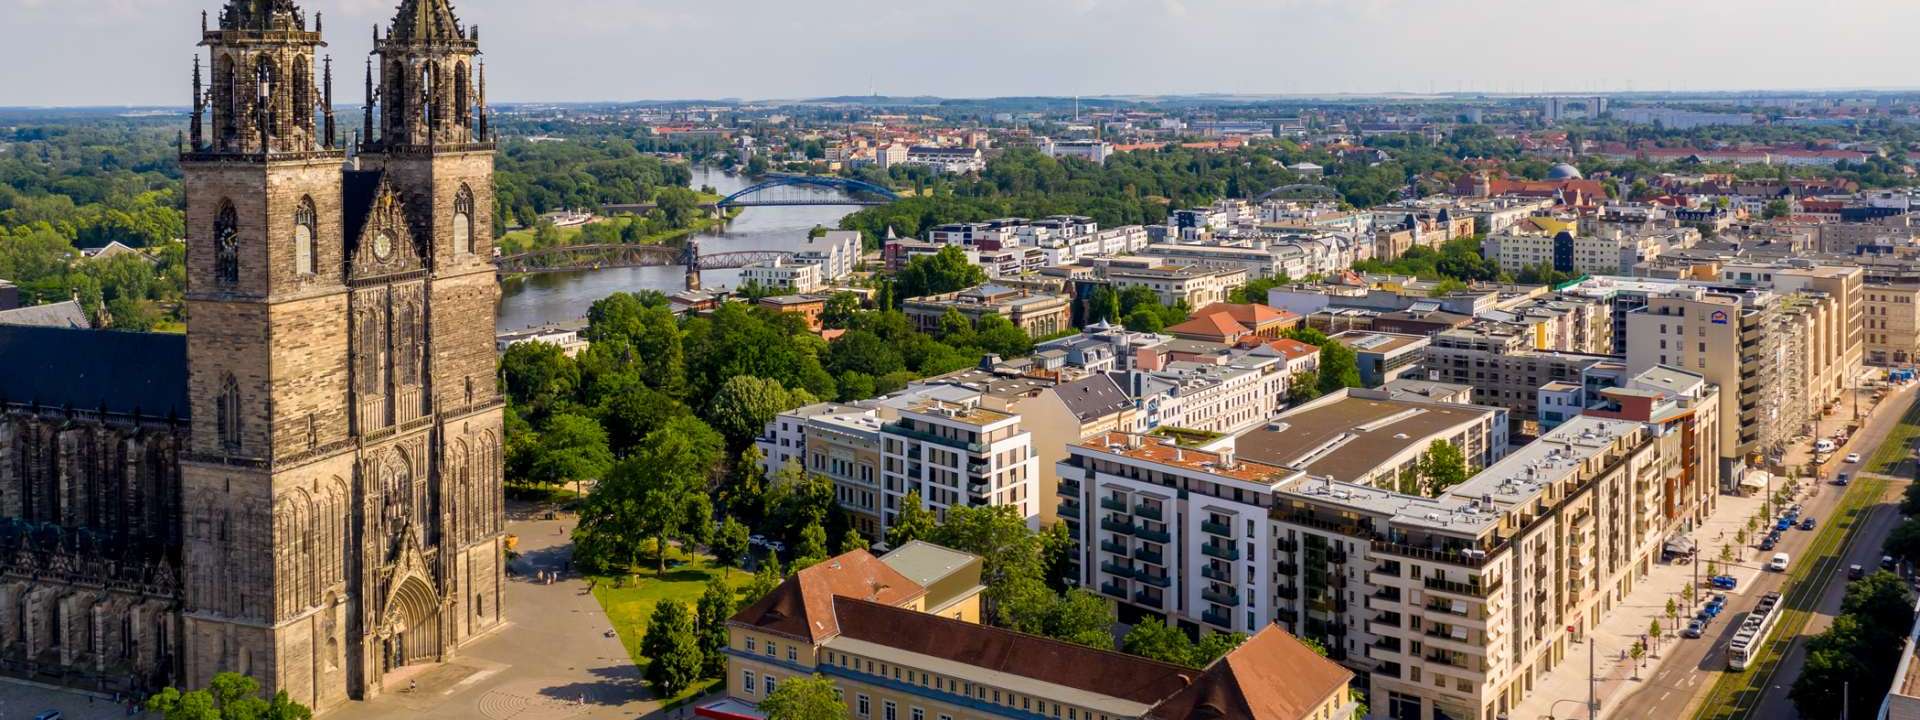 WOBAU Magdeburg